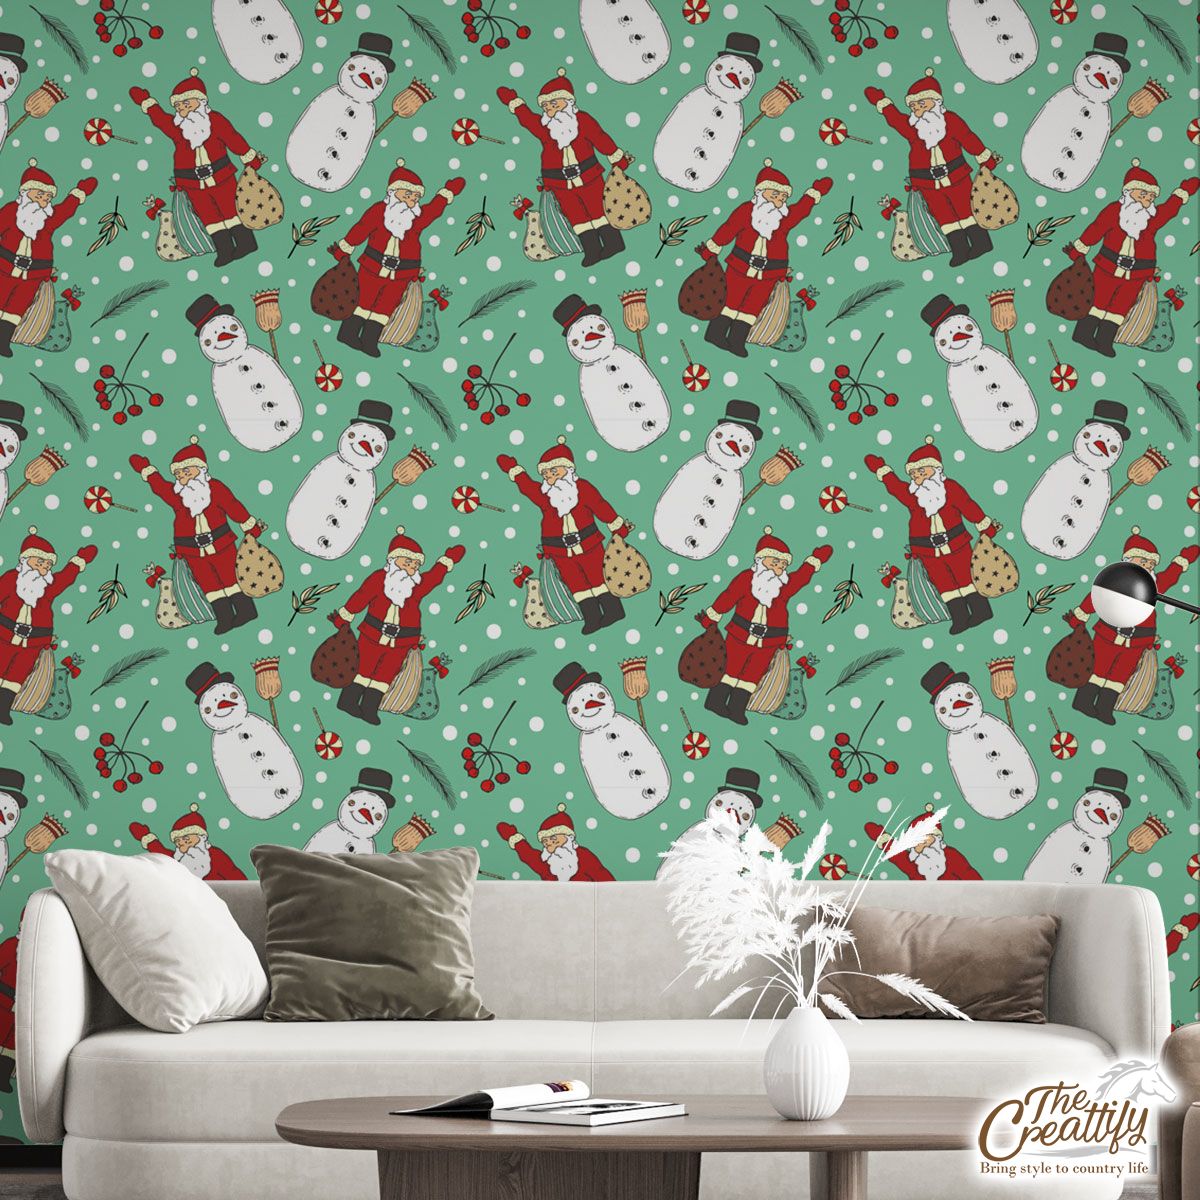 Santa Claus, Snowman Clipart Seamless Pattern Wall Mural